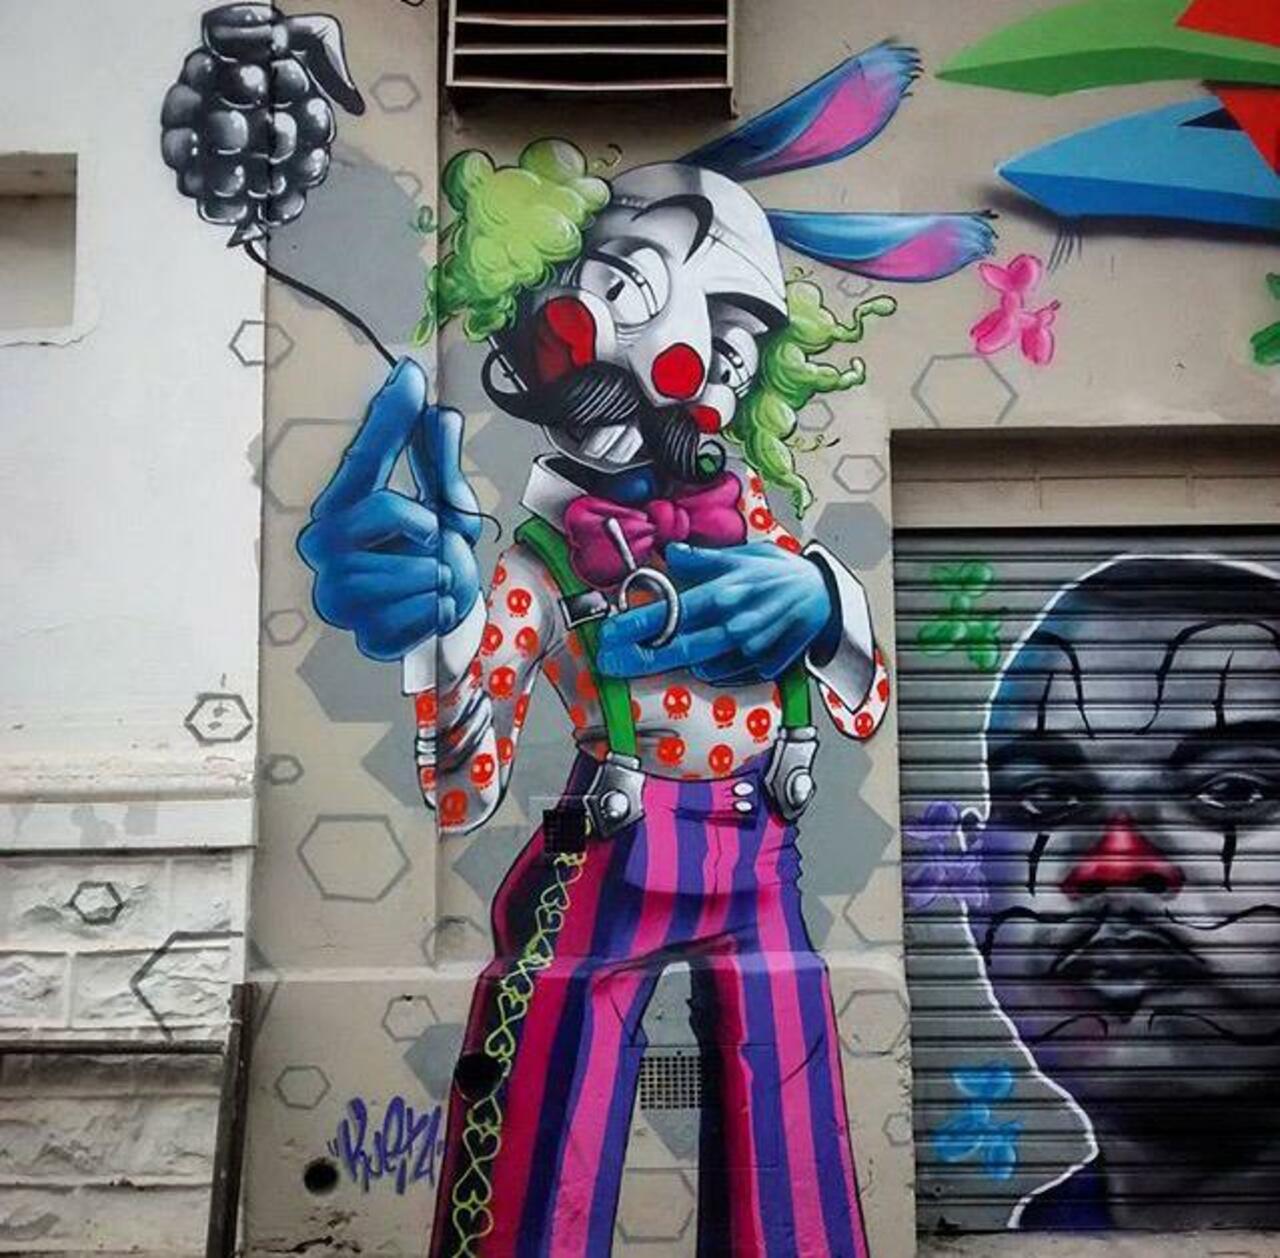 New Street Art by Karen Kueia 

#art #graffiti #mural #streetart http://t.co/zomoQfSxVT